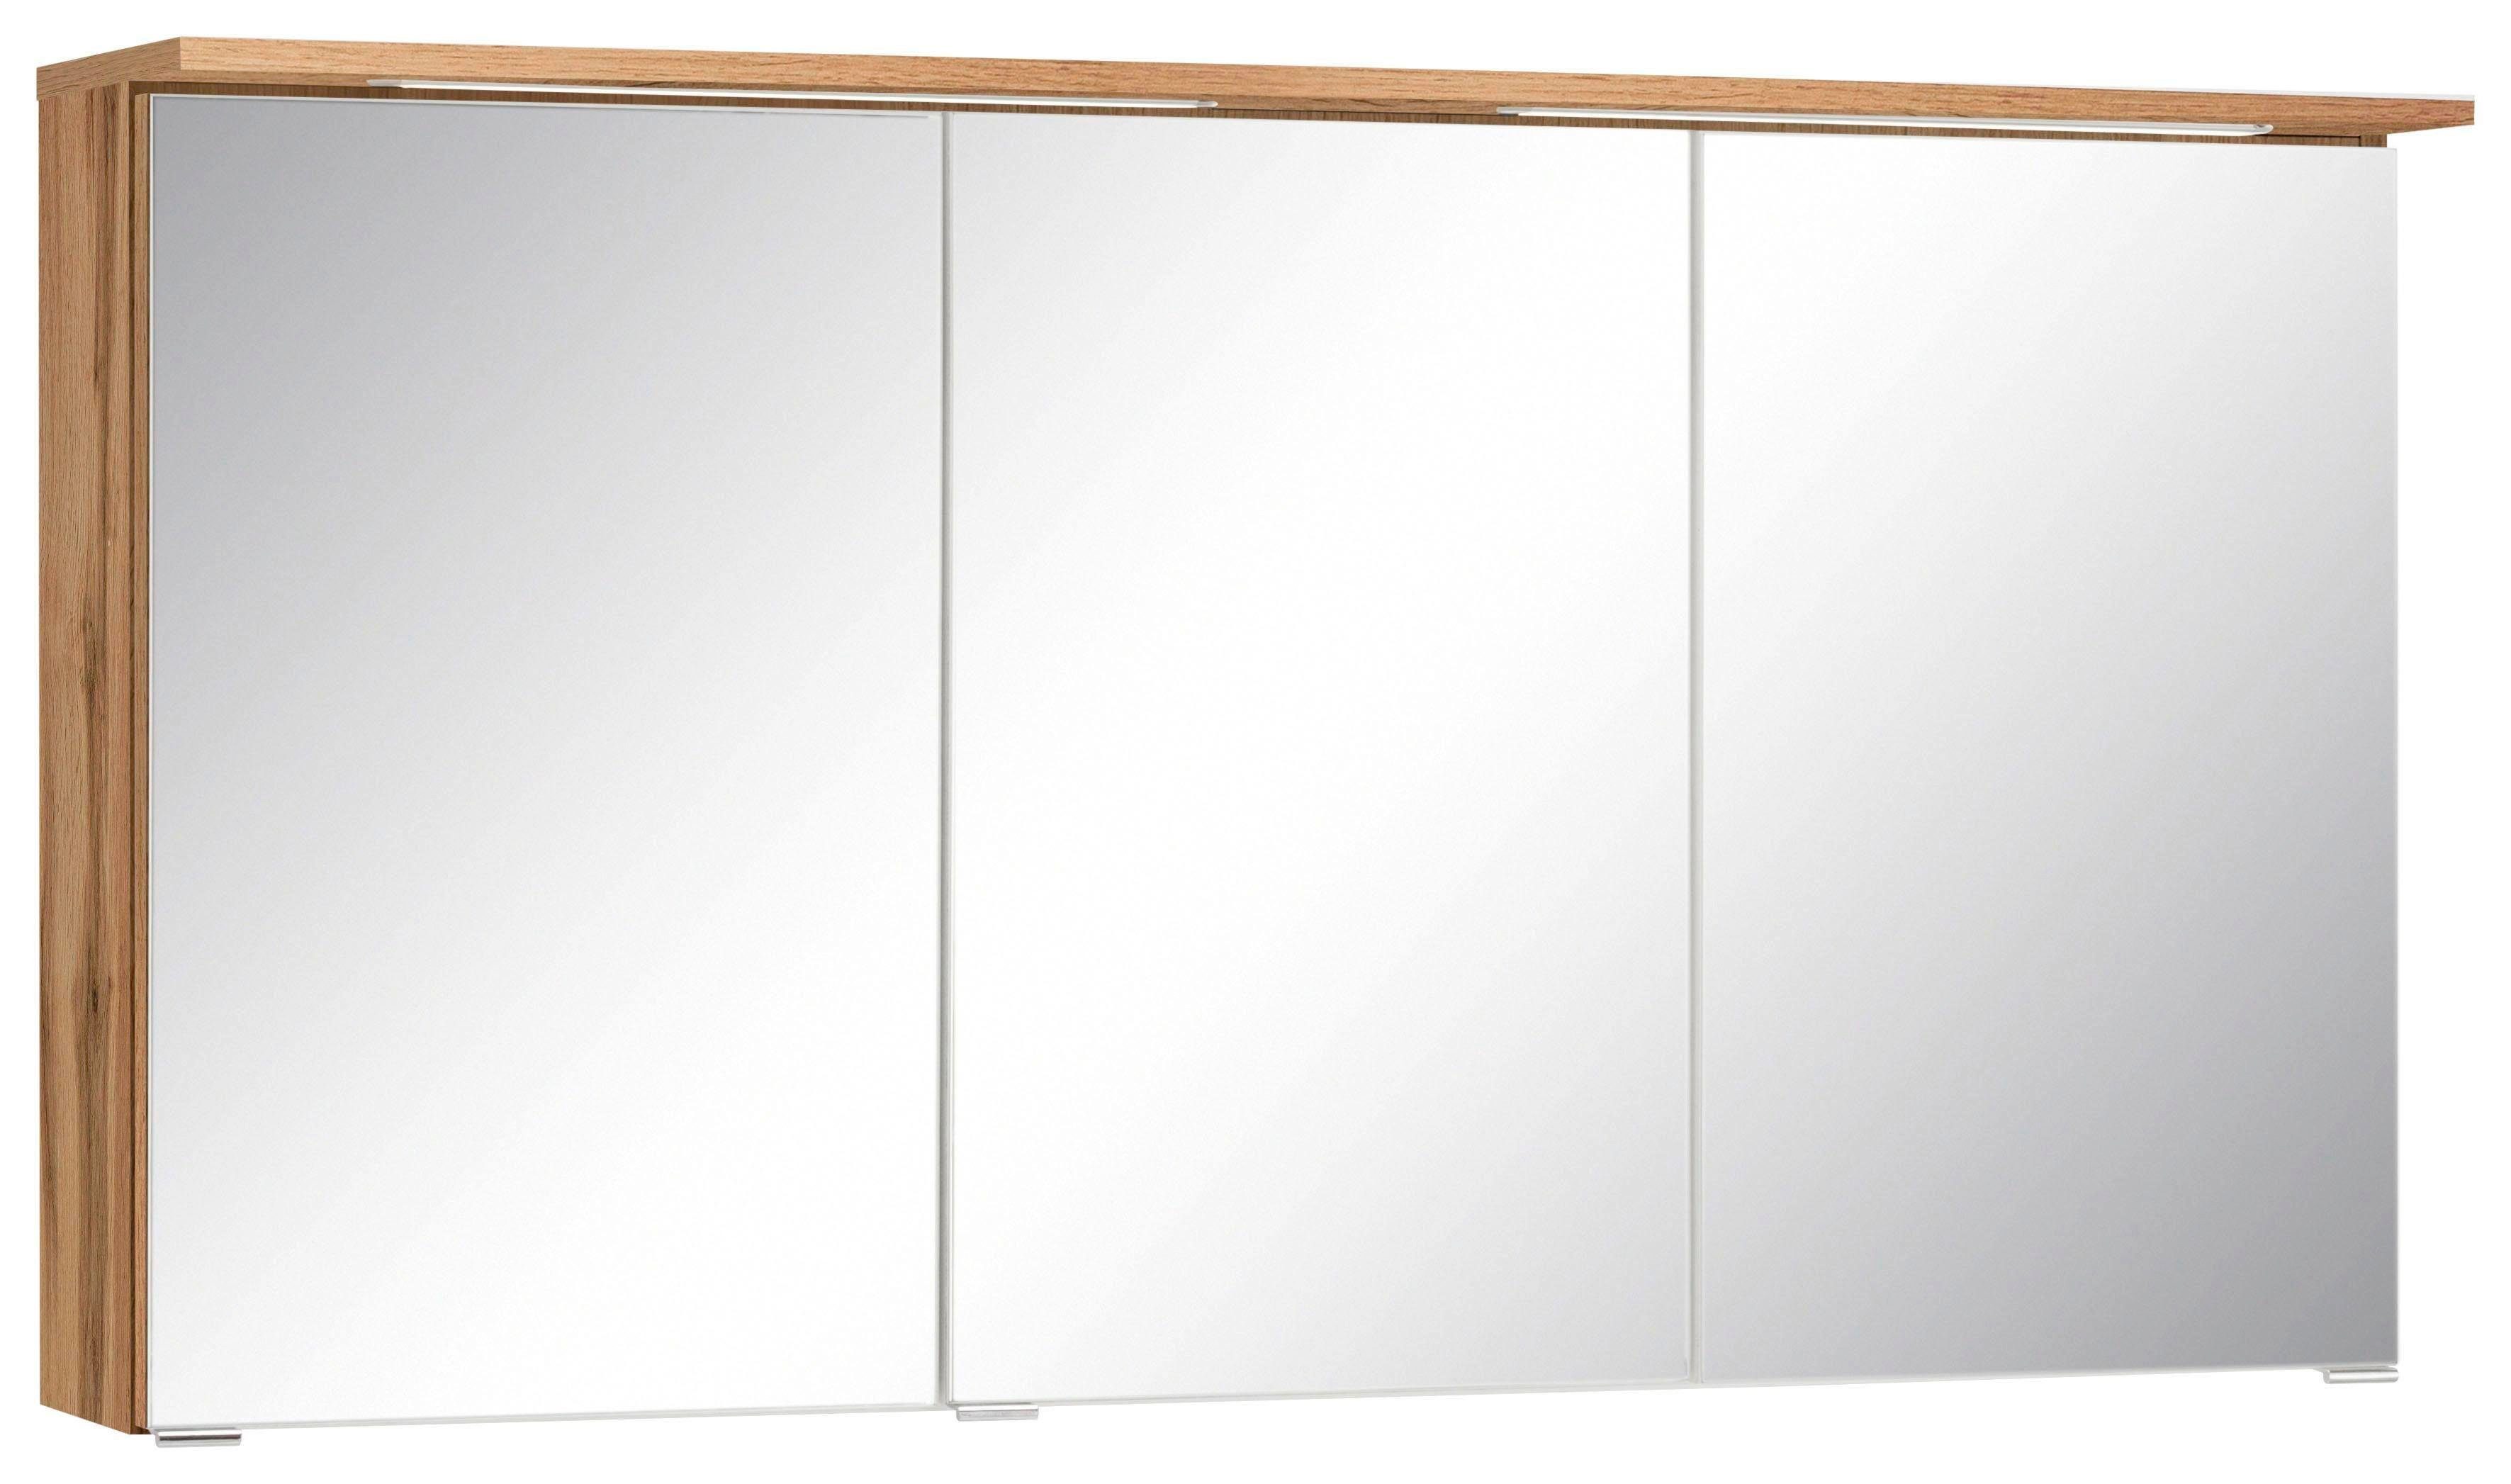 HELD MÖBEL Spiegelschrank Ravenna Breite 120 cm, mit LED Beleuchtung eichefarben | wotaneichefarben | Spiegelschränke